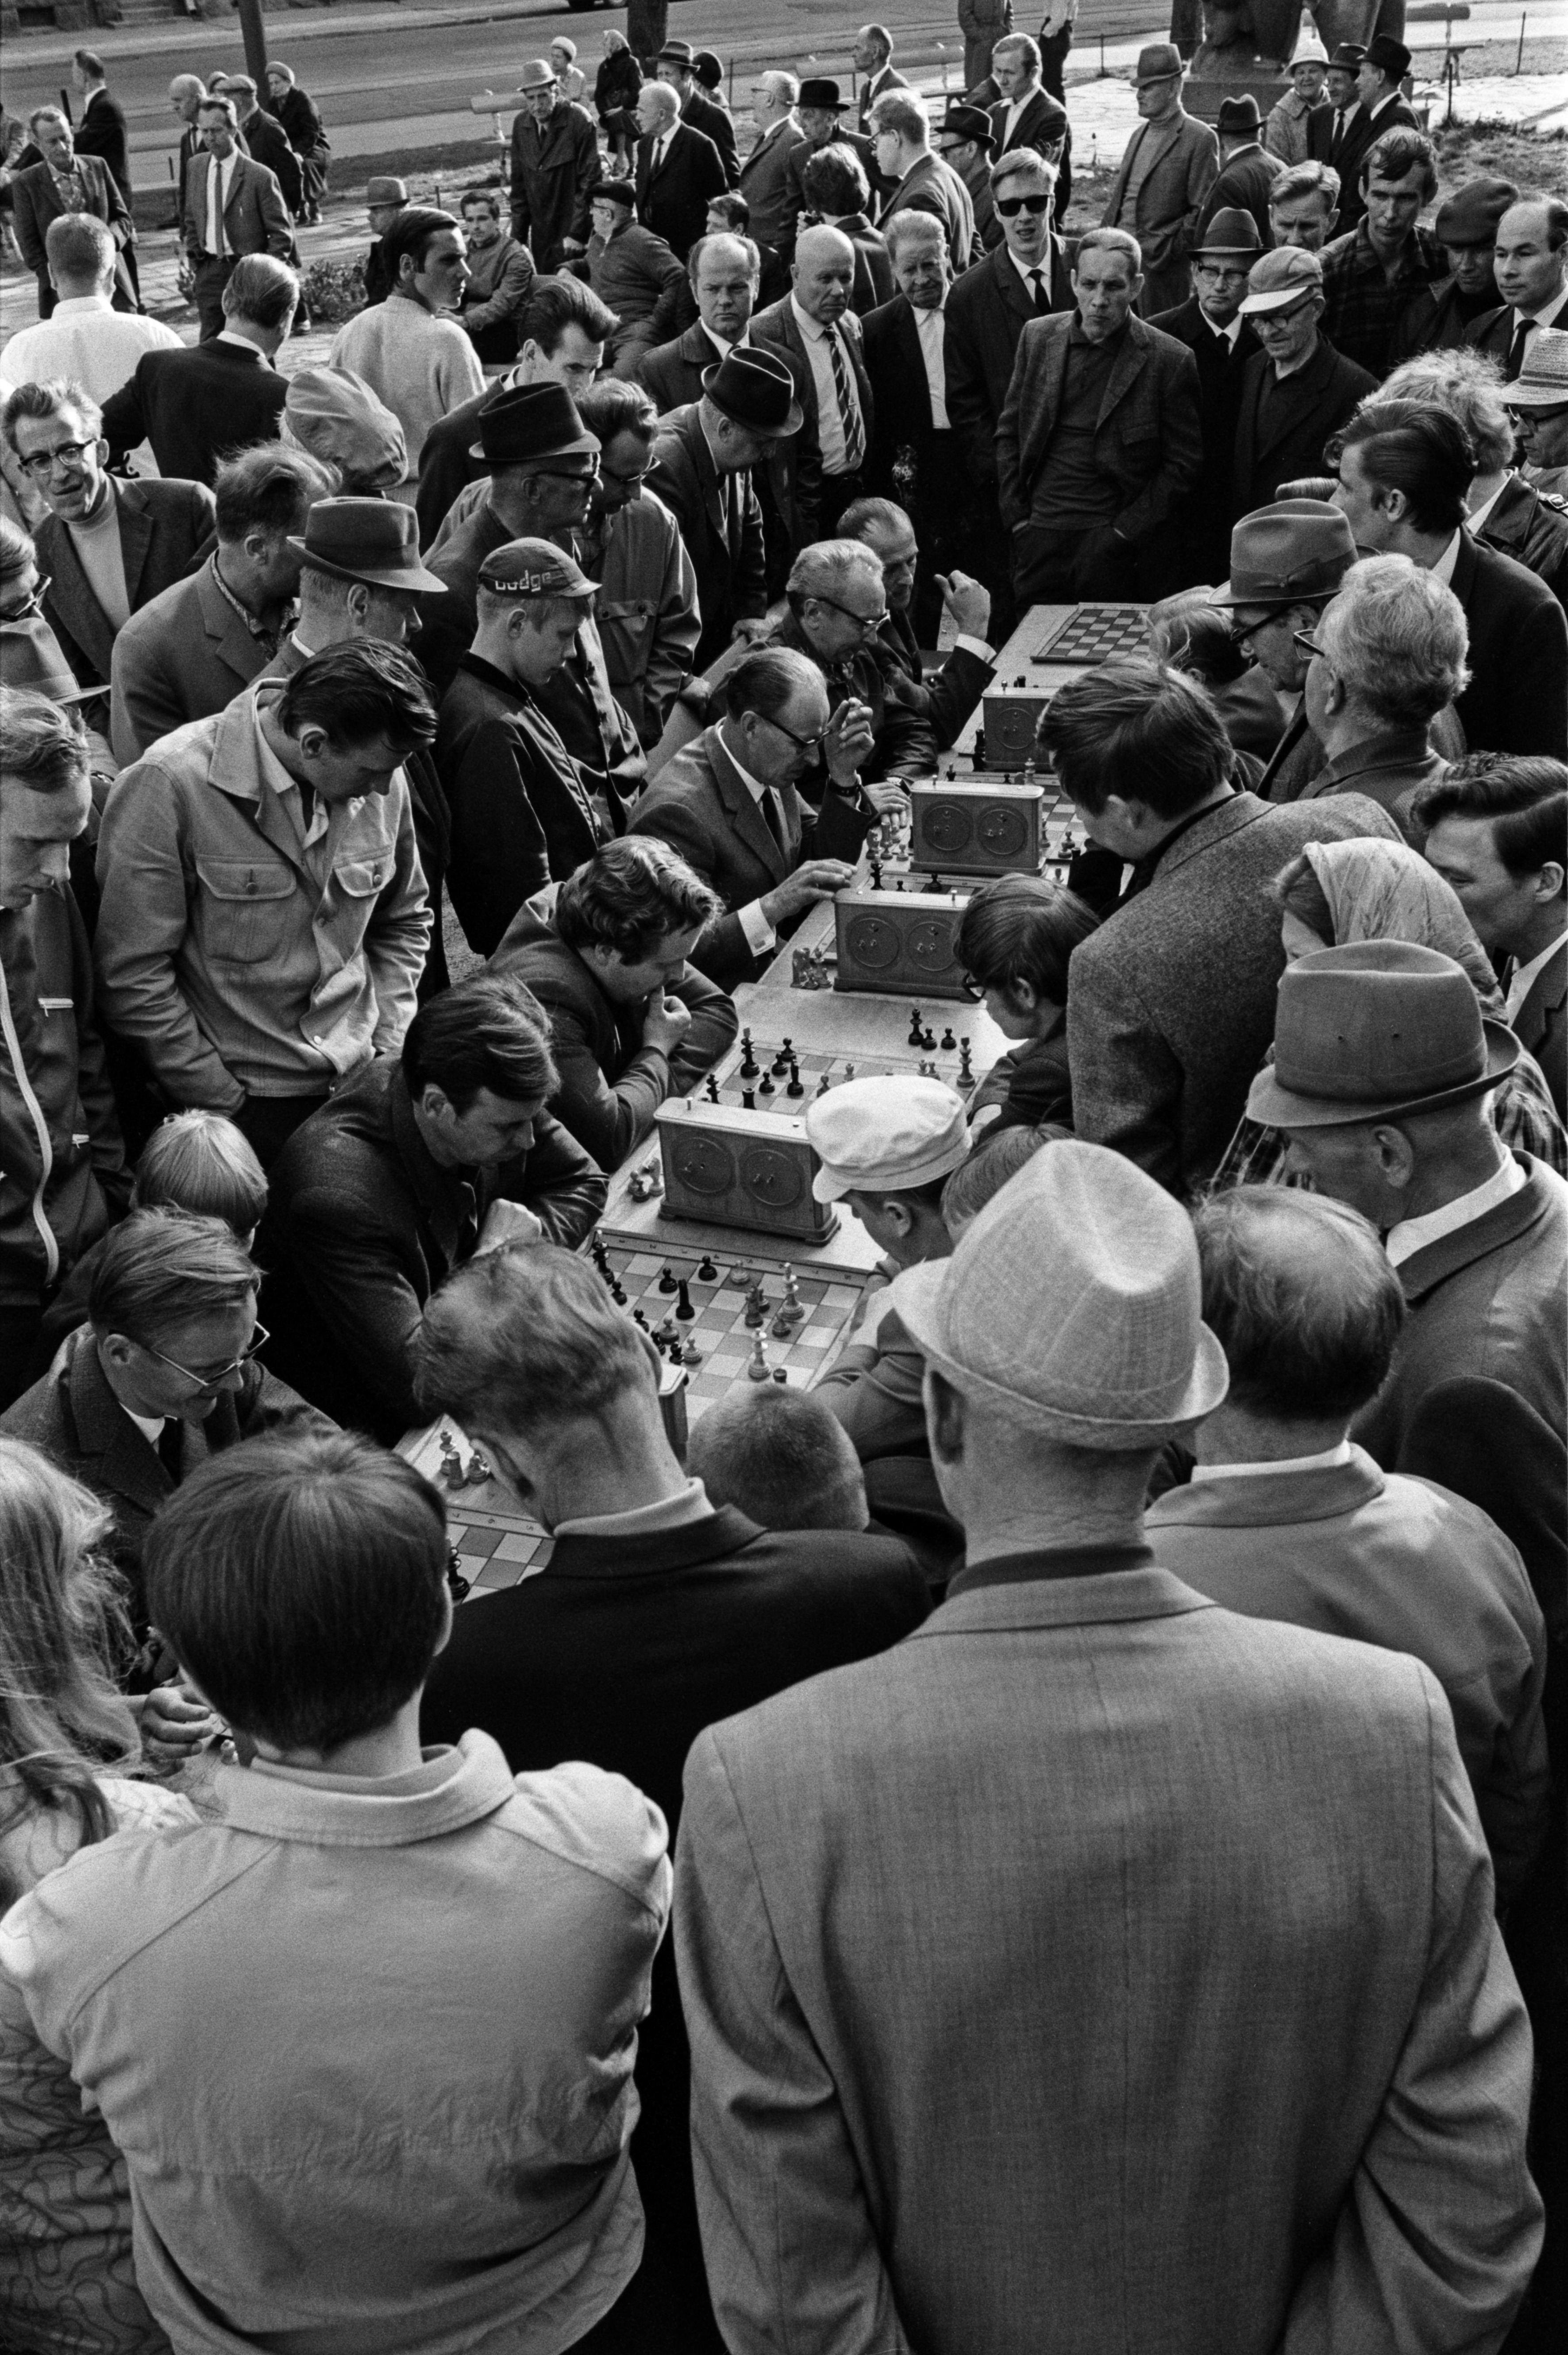 Karhupuisto. Helsingin juhlaviikot. Miehiä pelaamassa shakkia pitkän pöydän ääressä sankan yleisön seuratessa tapahtumaa Karhupuistossa puistotapahtuman aikaan.